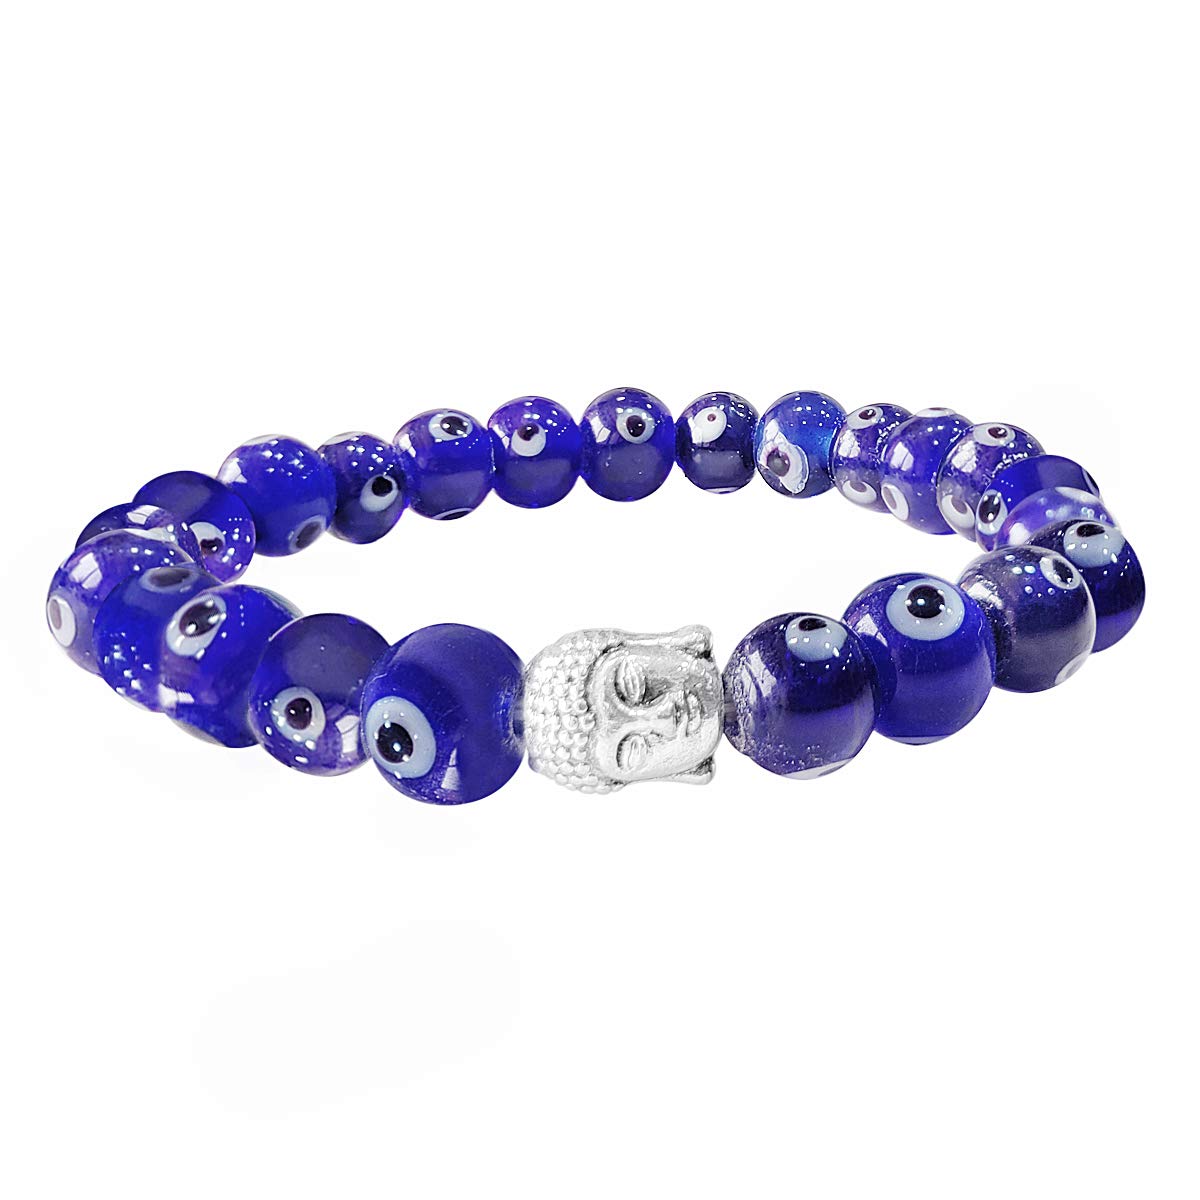 Bluequeen Evil Eye Crystal Elastic 8mm Stretch Crystal Yoga,Meditation Buddha Bracelet